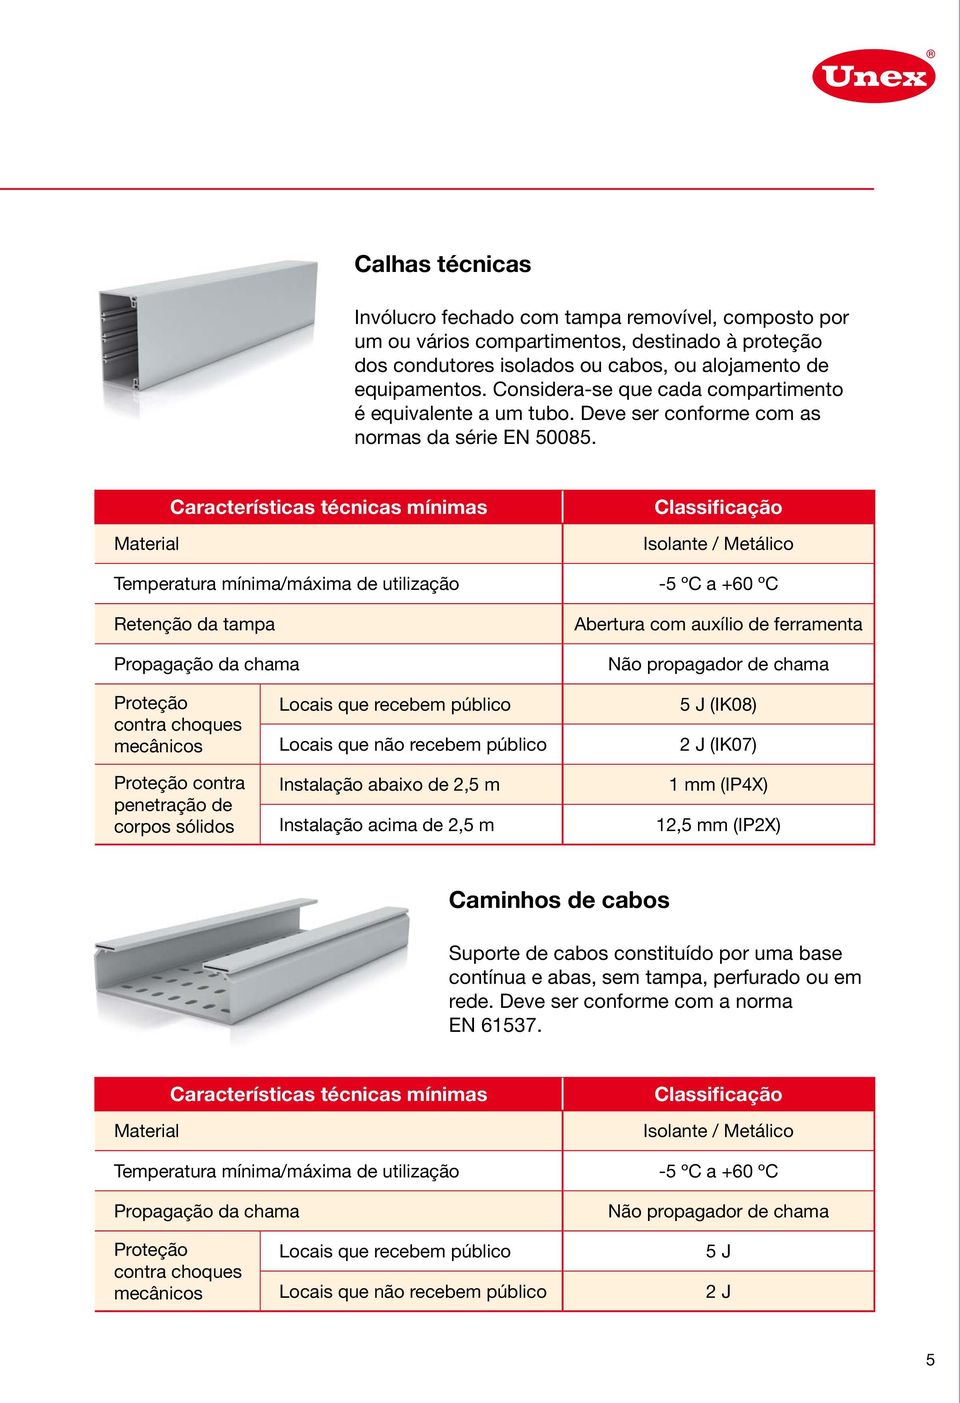 Material Características técnicas mínimas Classificação Isolante / Metálico Temperatura mínima/máxima de utilização -5 ºC a +60 ºC Retenção da tampa Propagação da chama Abertura com auxílio de